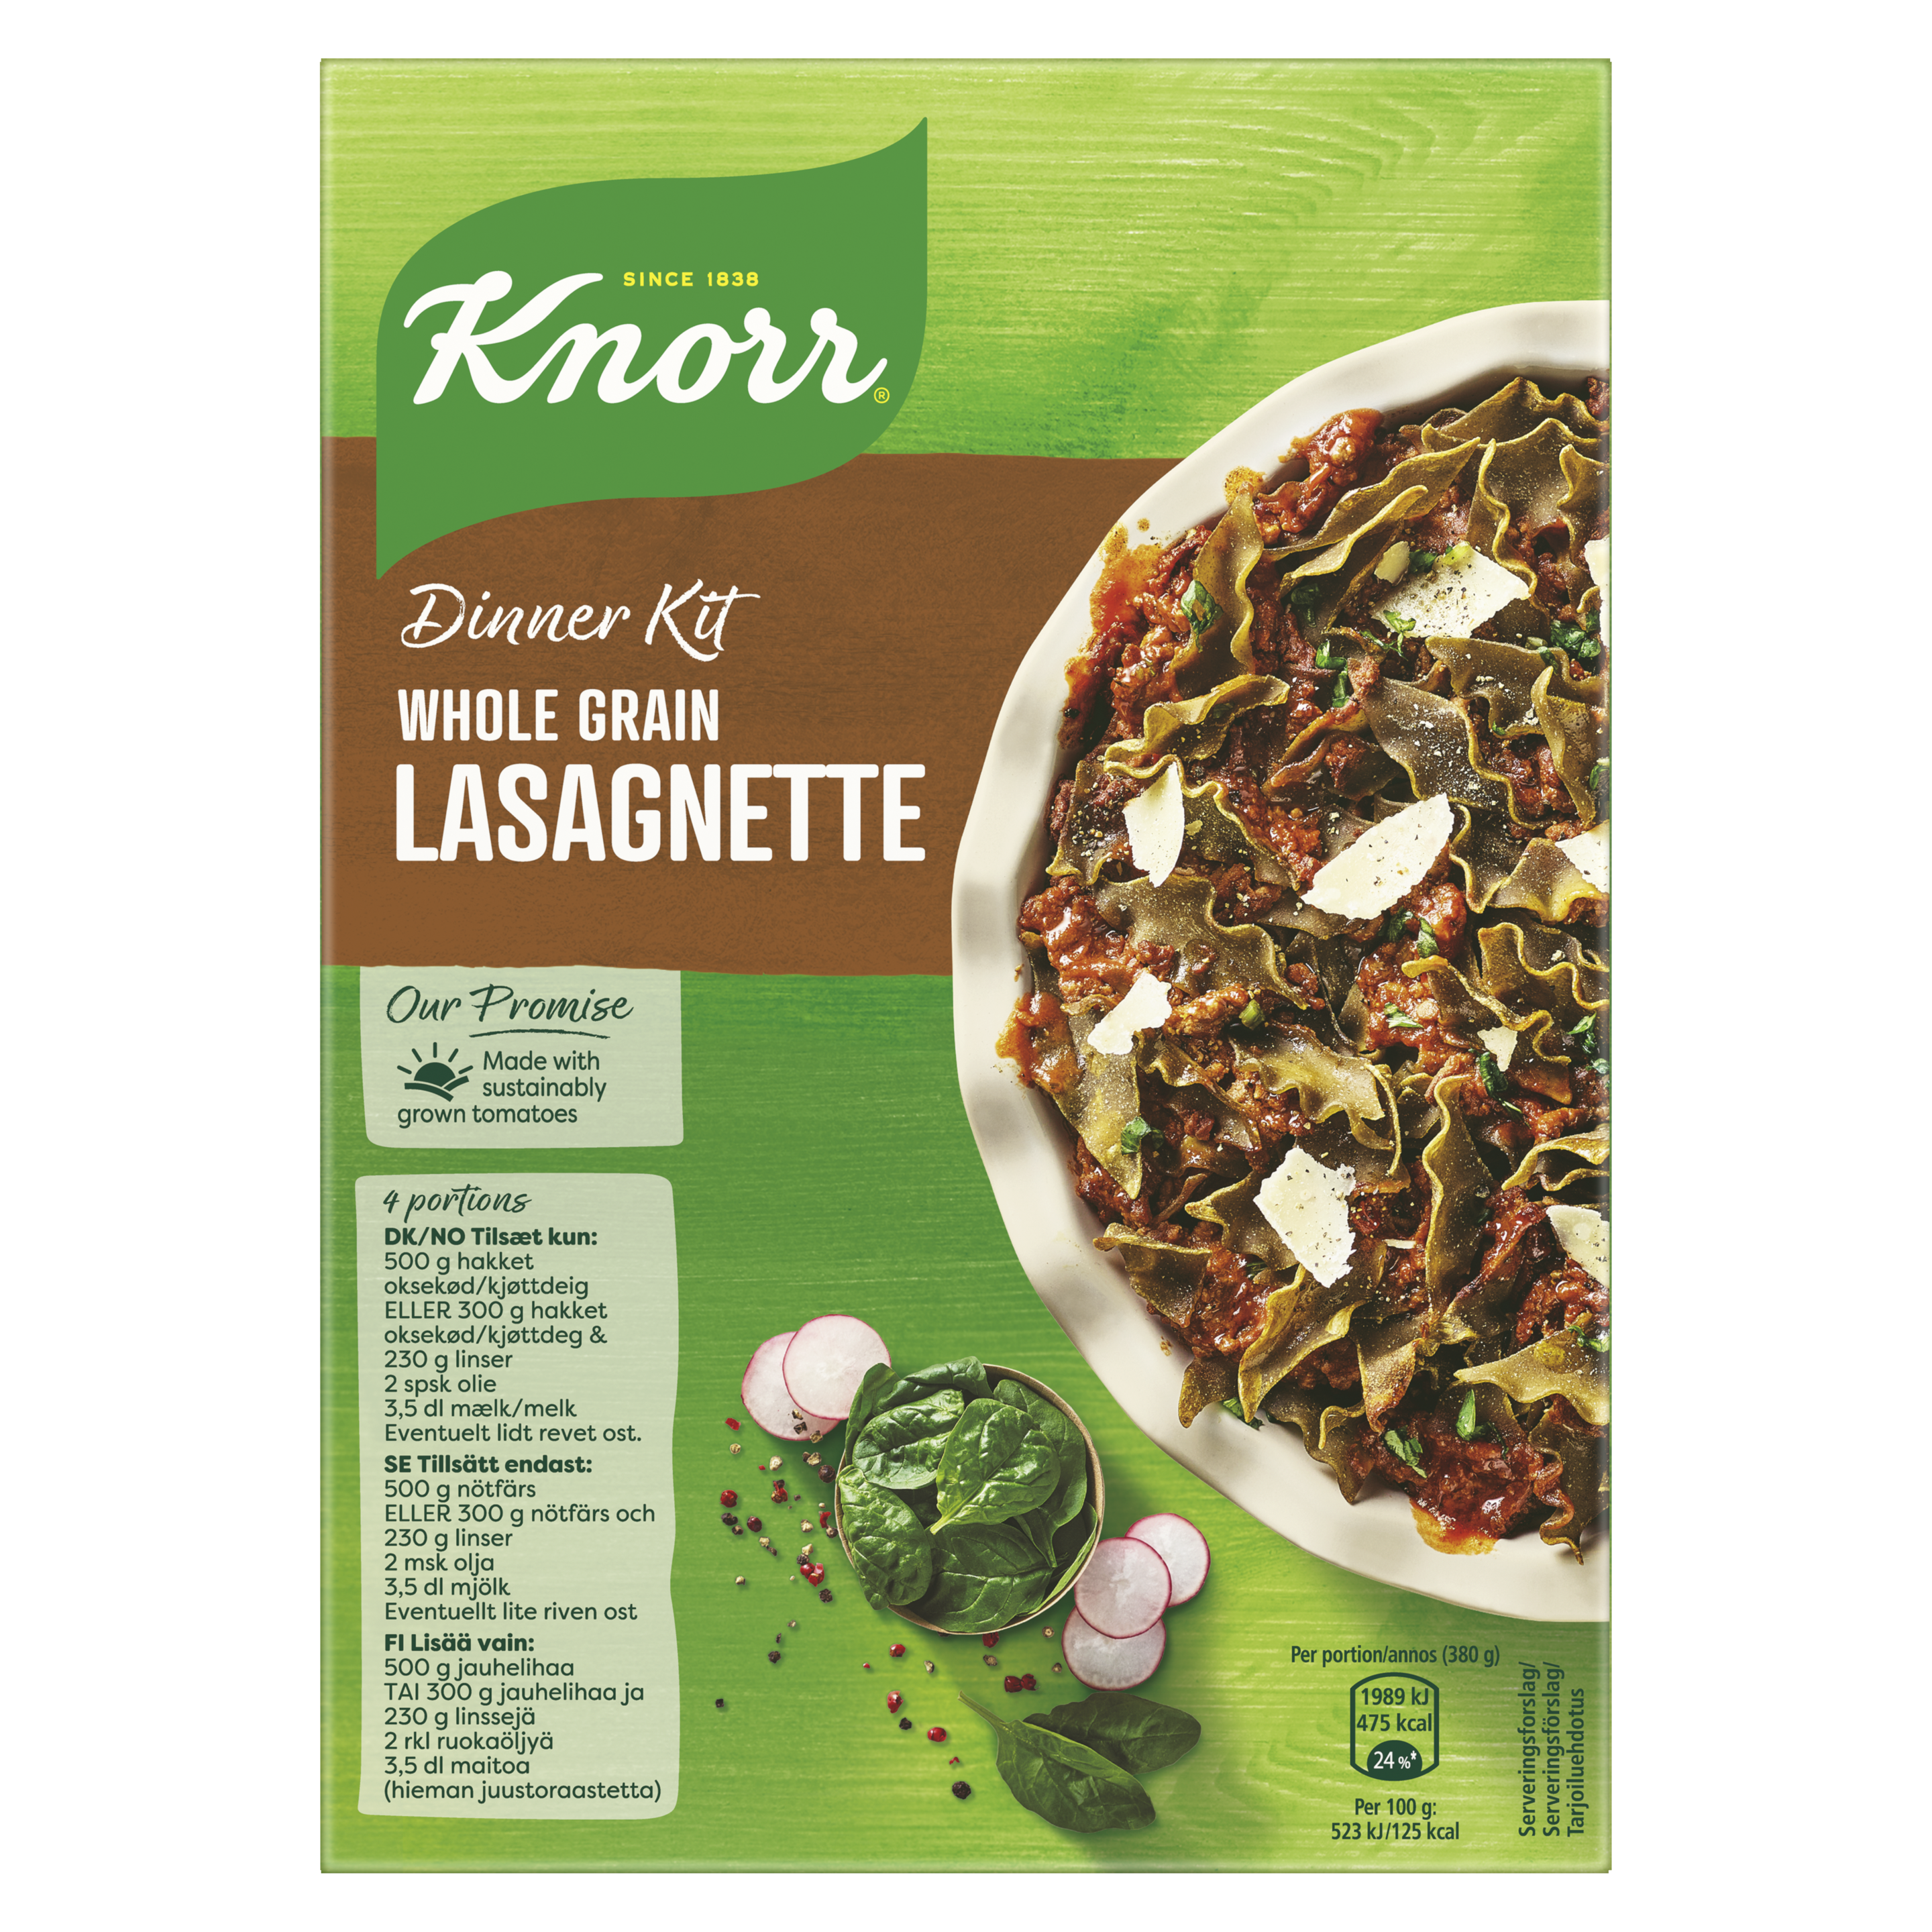 Dinner Kit Whole Grain Lasagnette